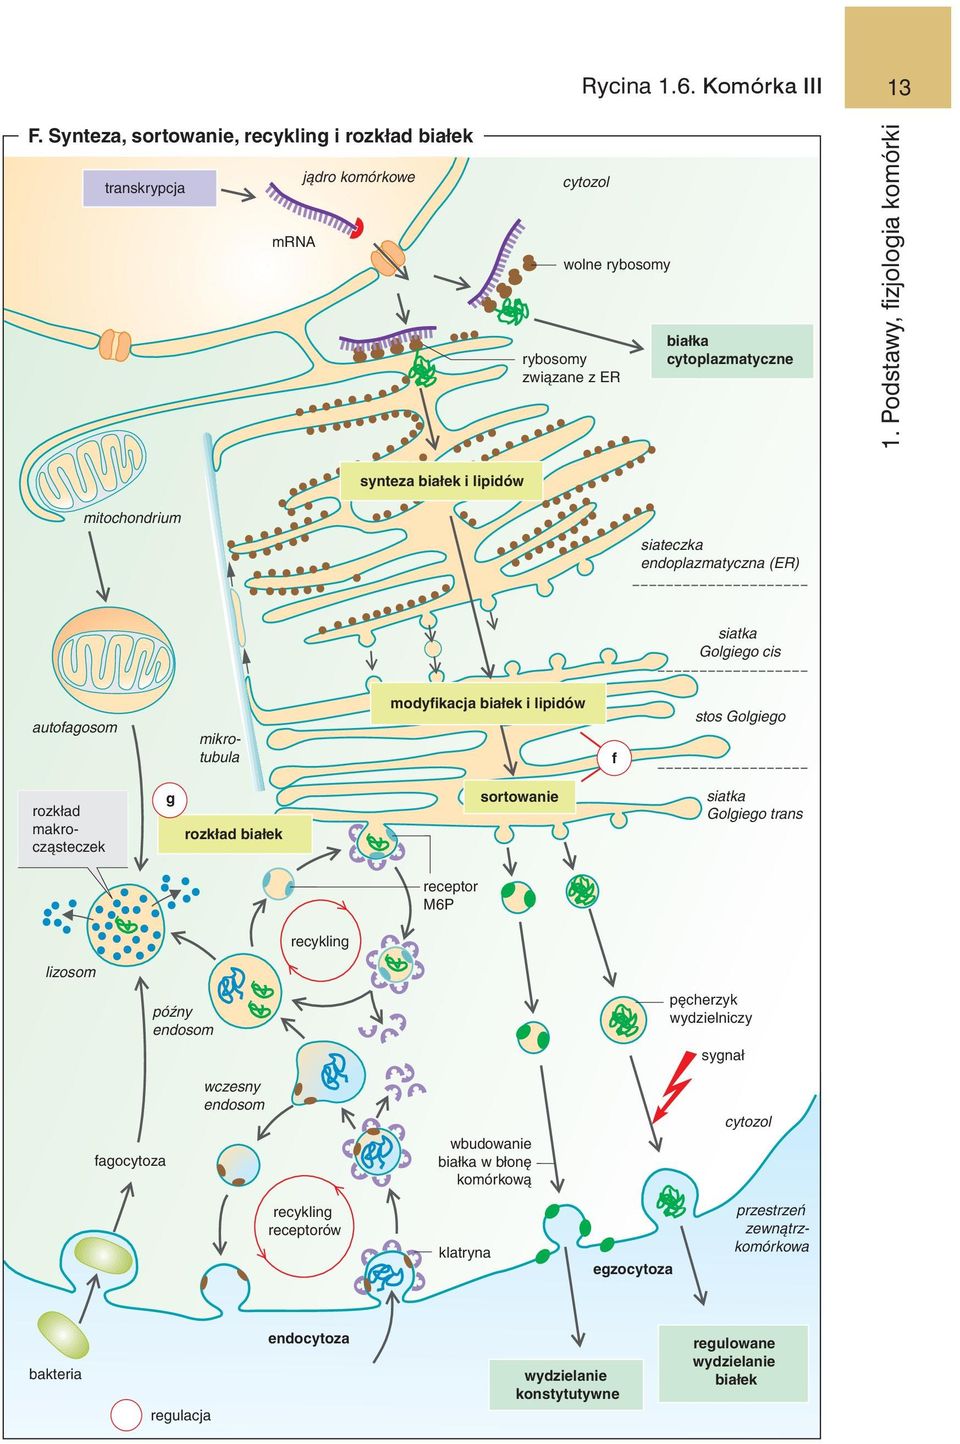 f stos Golgiego rozkład makrocząsteczek g rozkład białek sortowanie siatka Golgiego trans receptor M6P recykling lizosom późny endosom pęcherzyk wydzielniczy sygnał fagocytoza